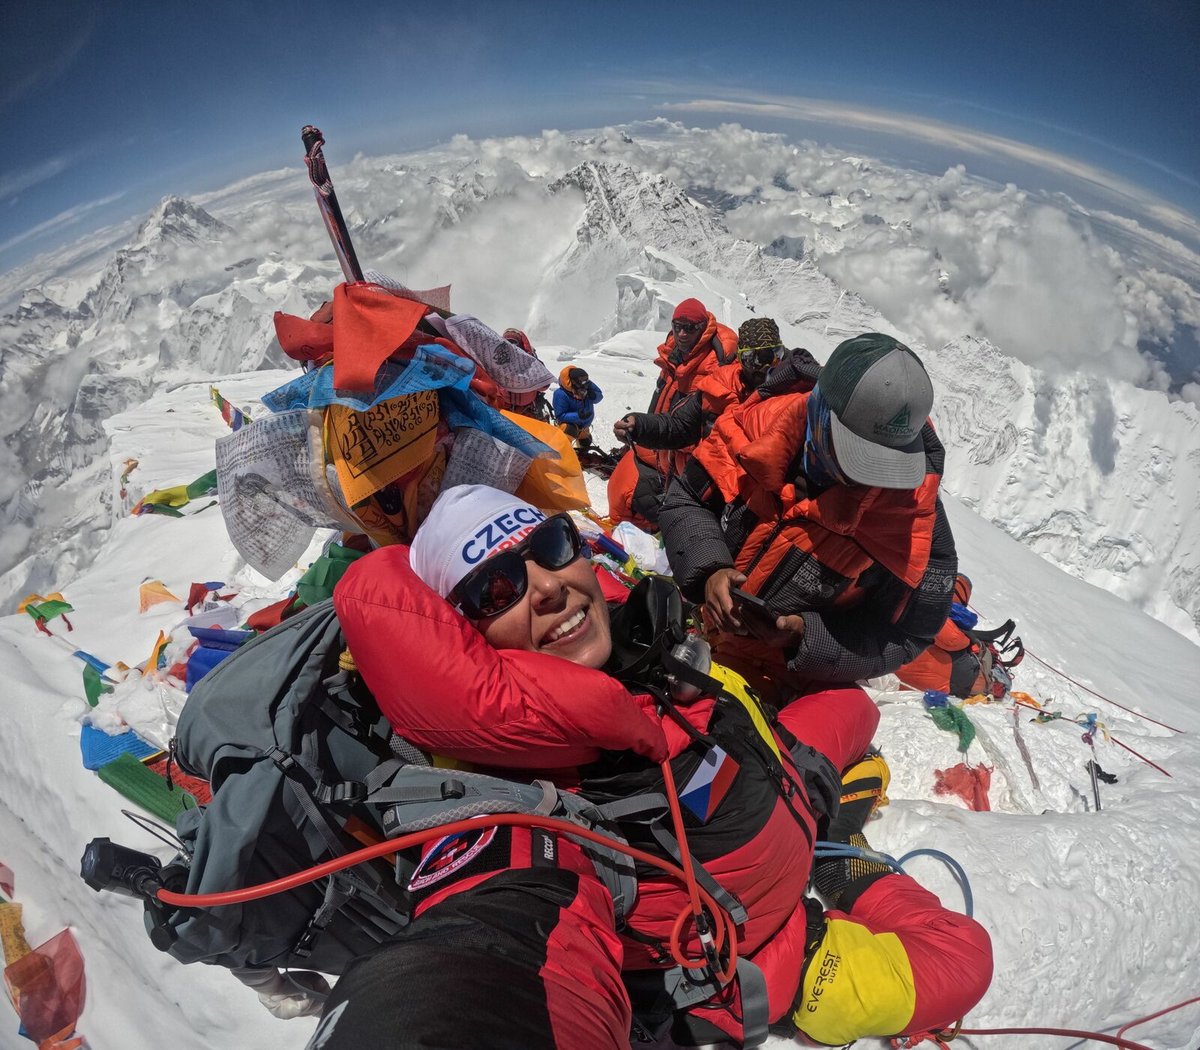 Další foto z vrcholu Mount Everestu.